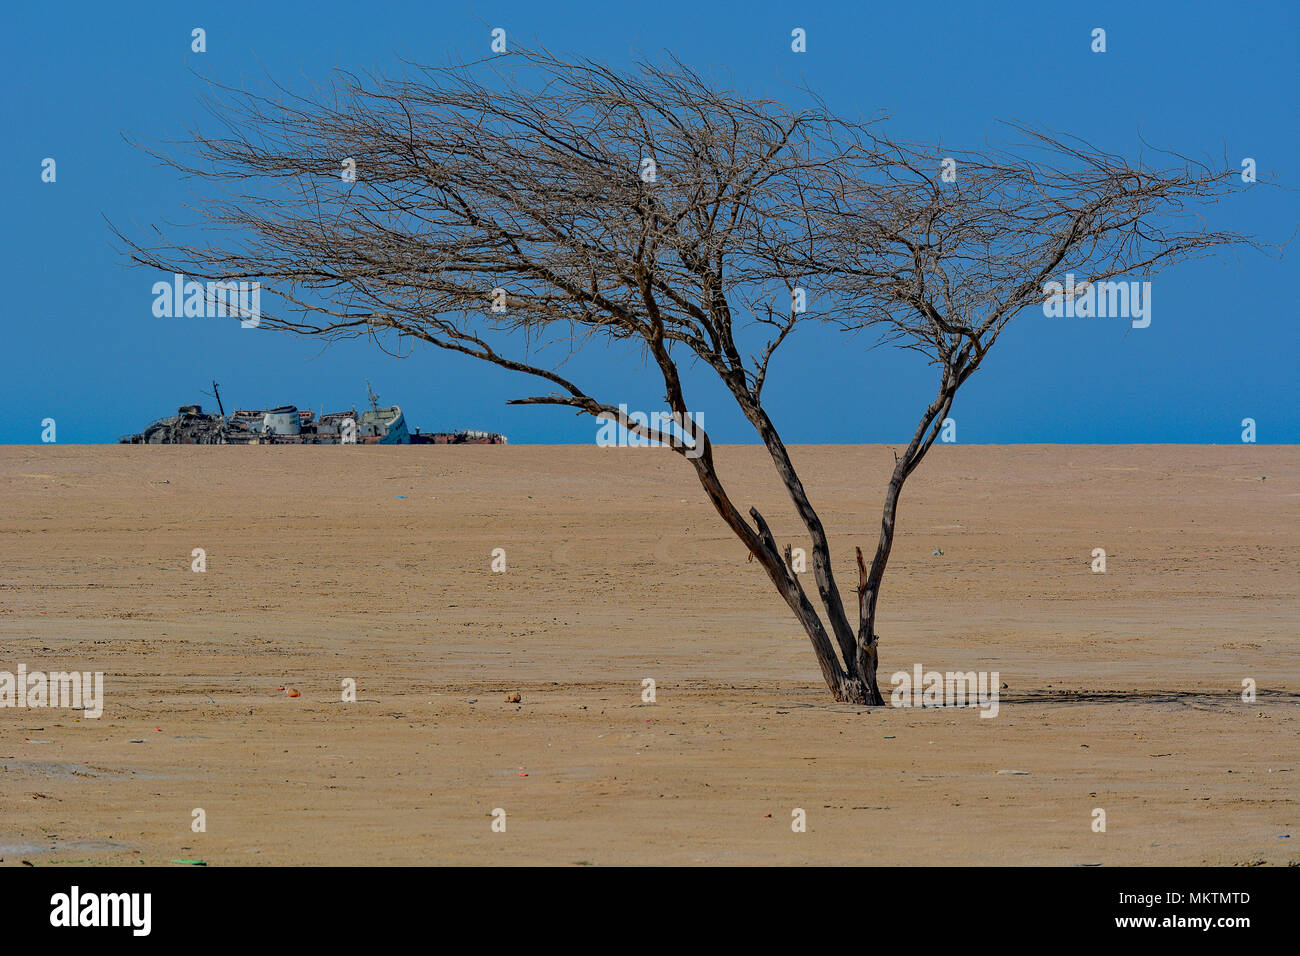 Gegenüberstellung von Baum in Wüste Küste mit verlassenen Schiff an der Küste des Roten Meeres von Saudi-arabien. Stockfoto